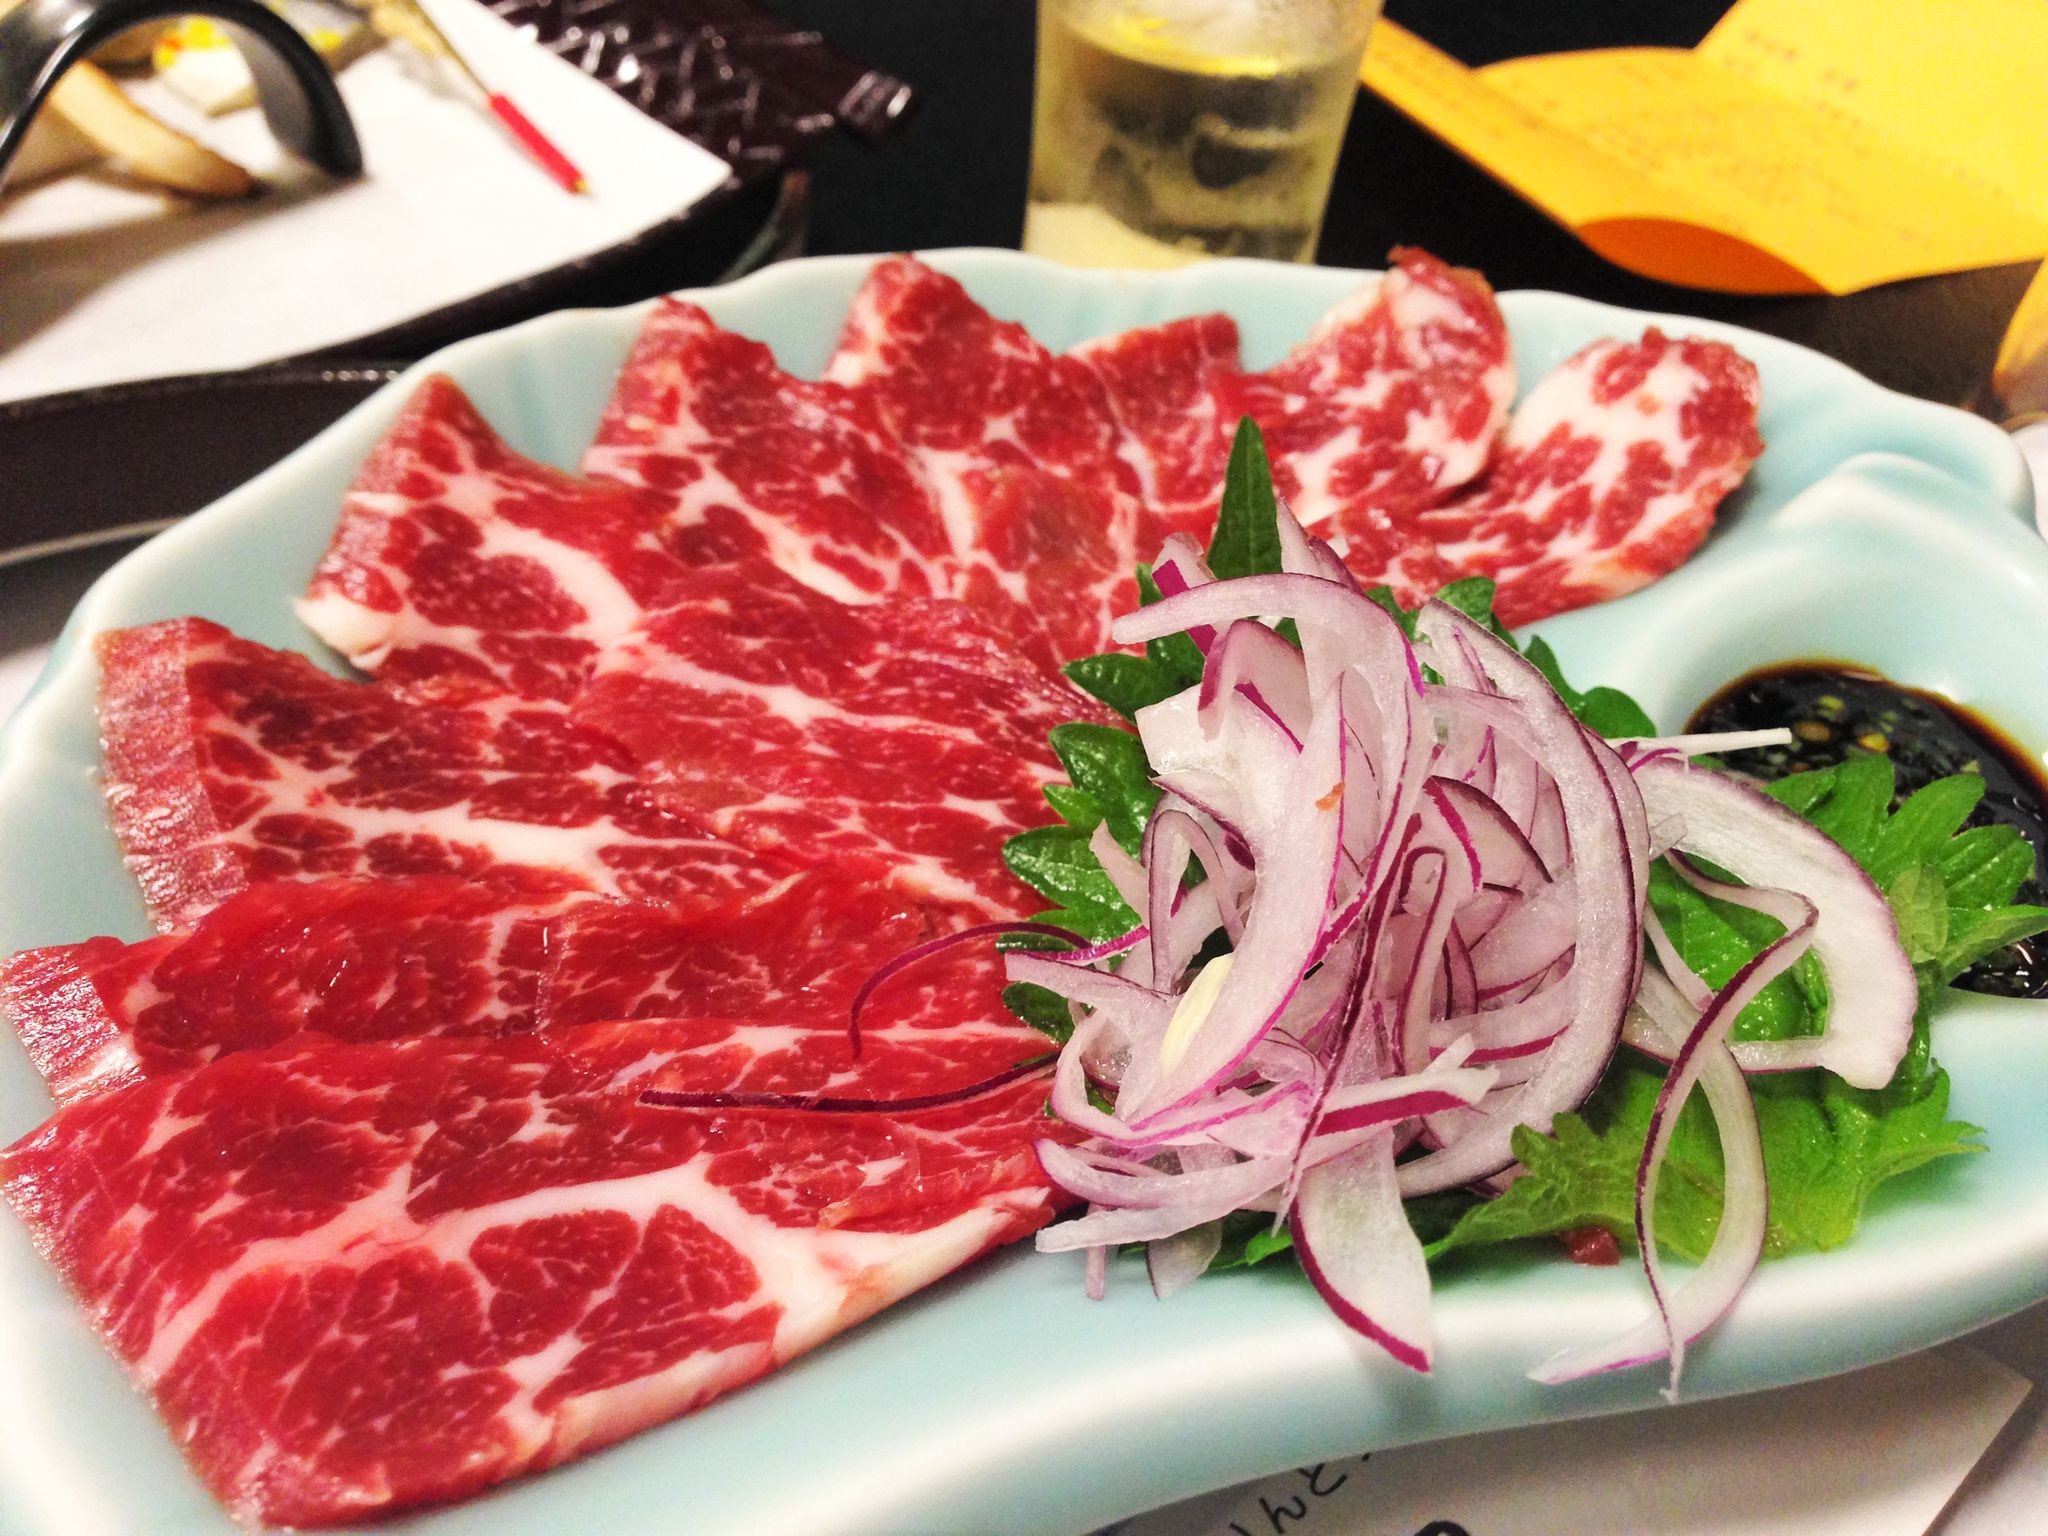 Kumamoto gourmet Horse Meat Dishes: Various Ways to Eat, Including Sashimi, Sushi, and Hamburgers